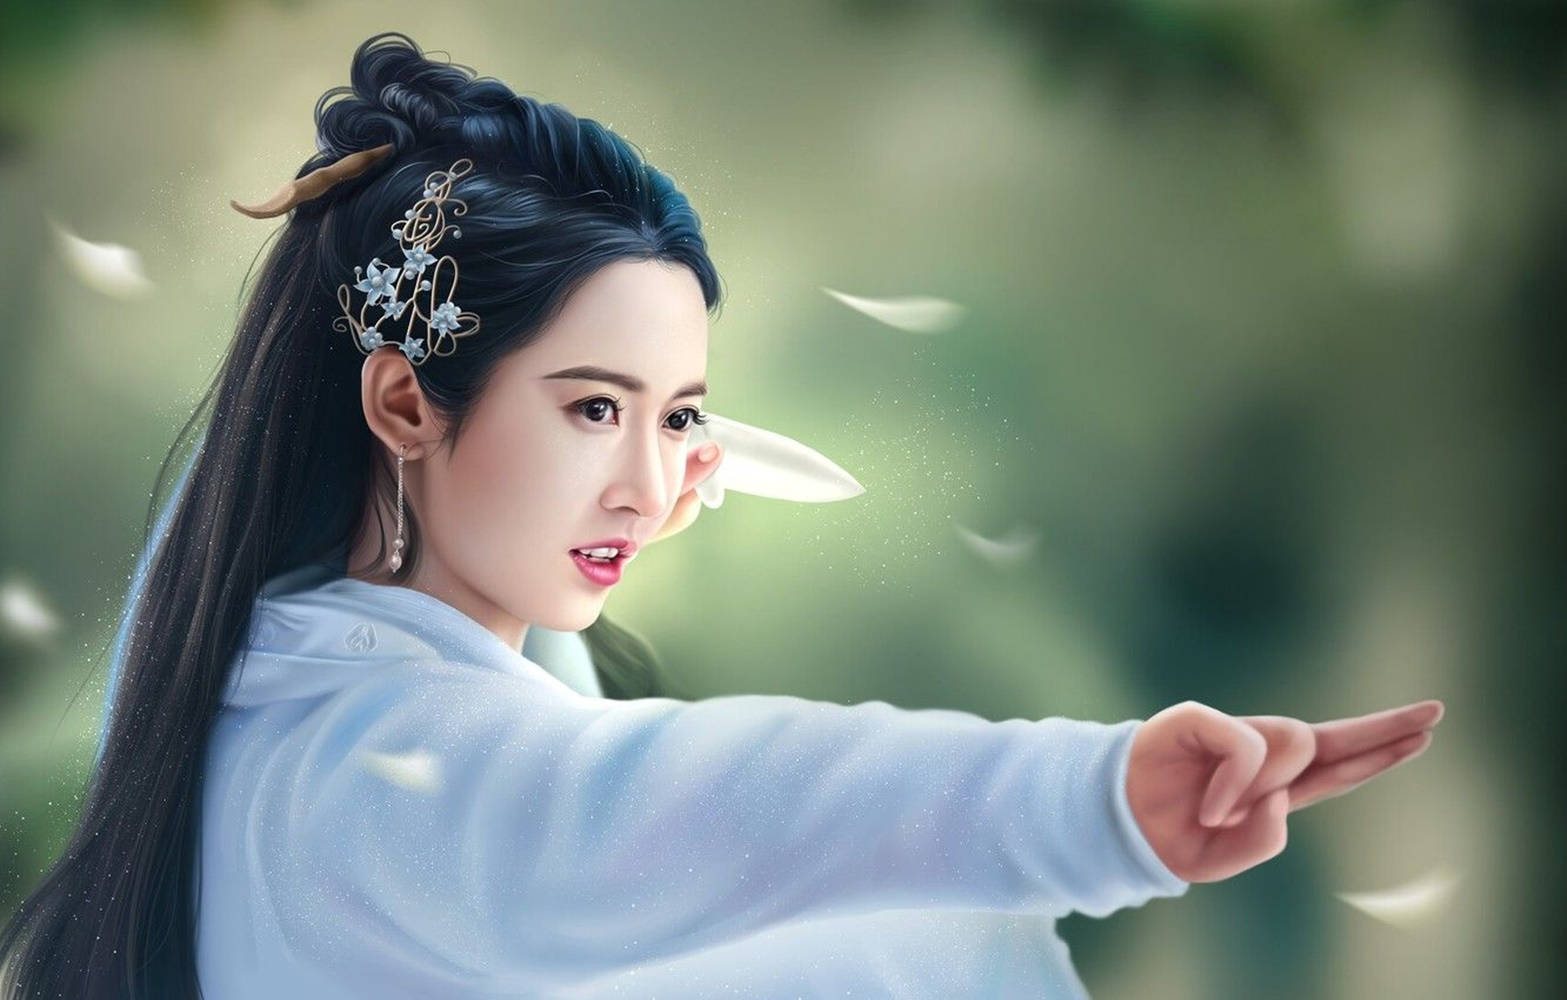 Chinese Girl Historical Drama Background